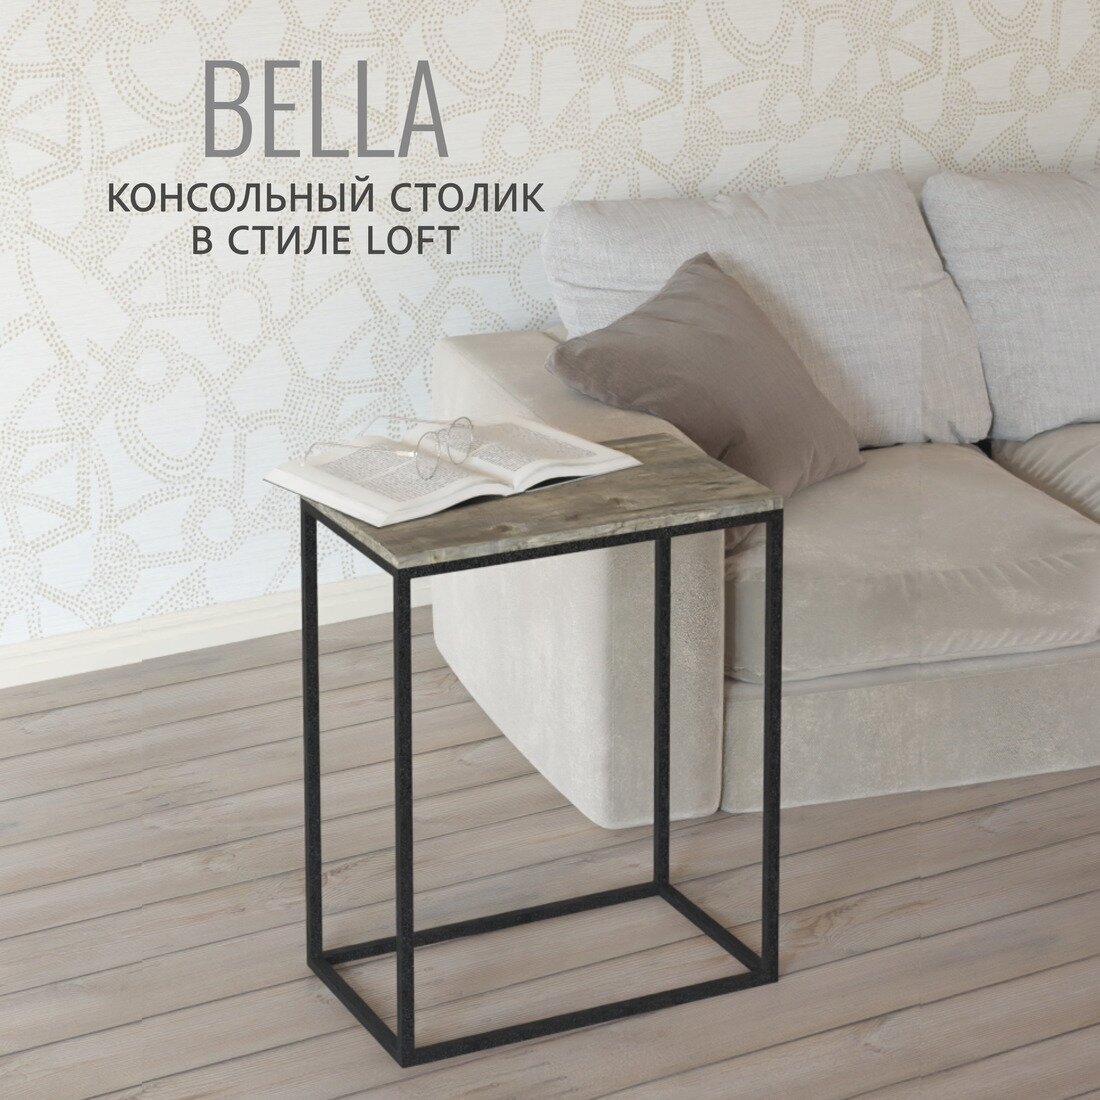 Консольный столик Bella loft